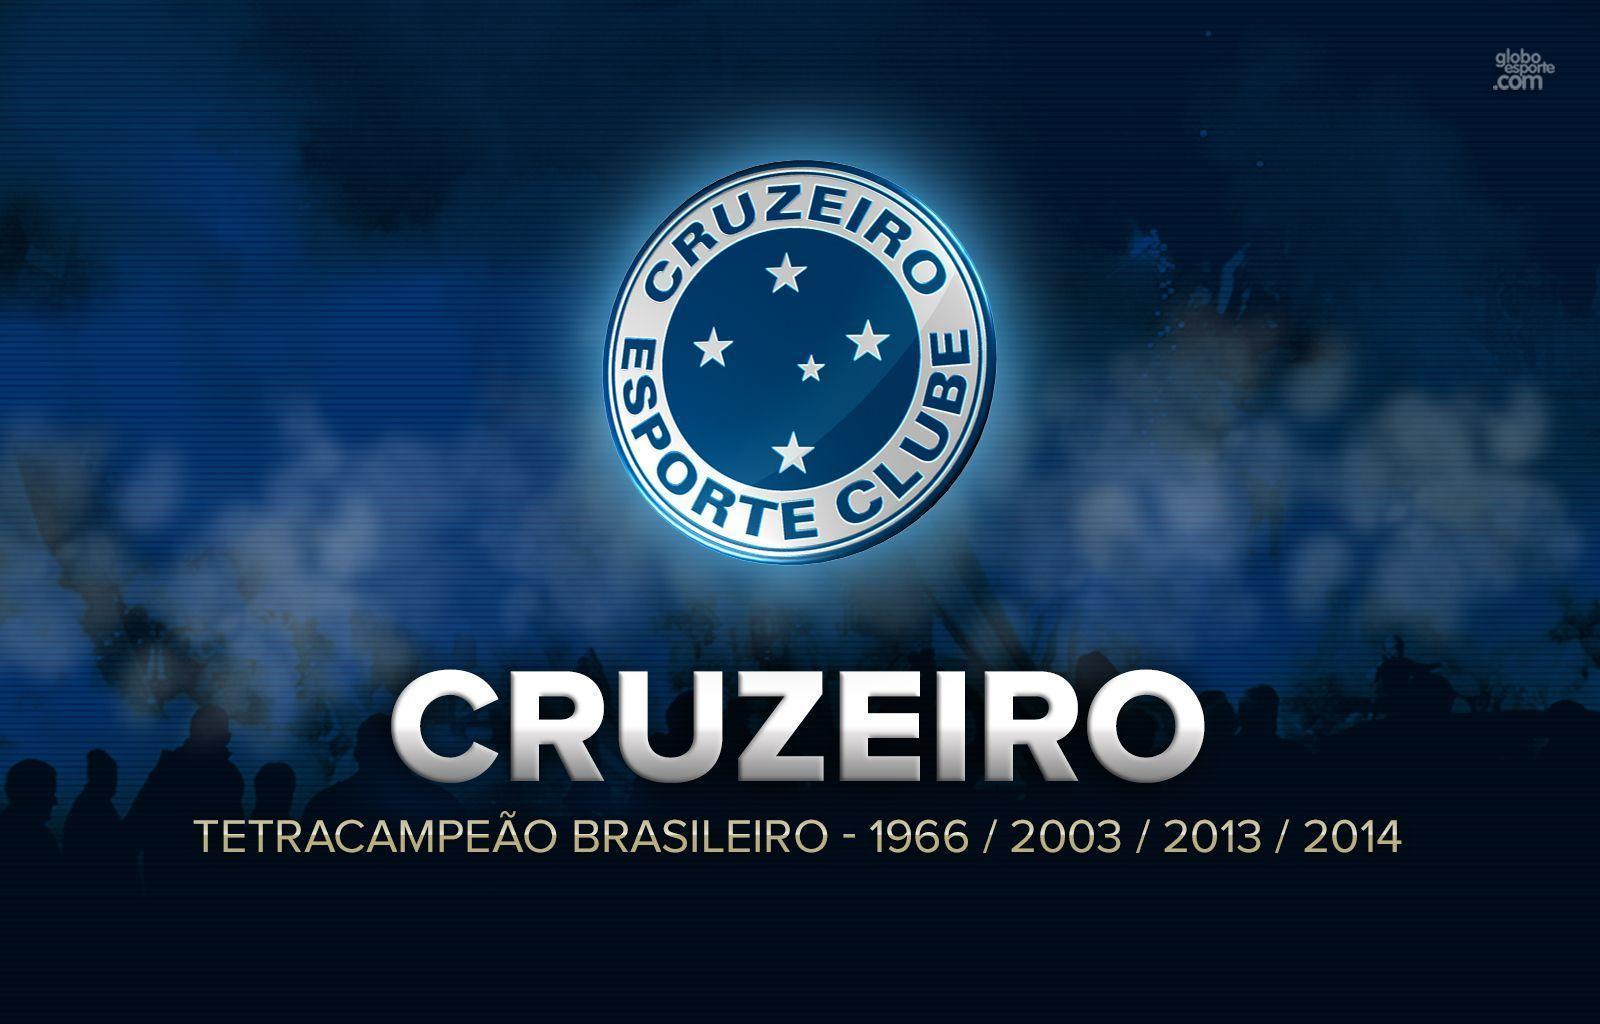 Wallpaper: baixe aqui o papel de parede do Cruzeiro tetracampeão